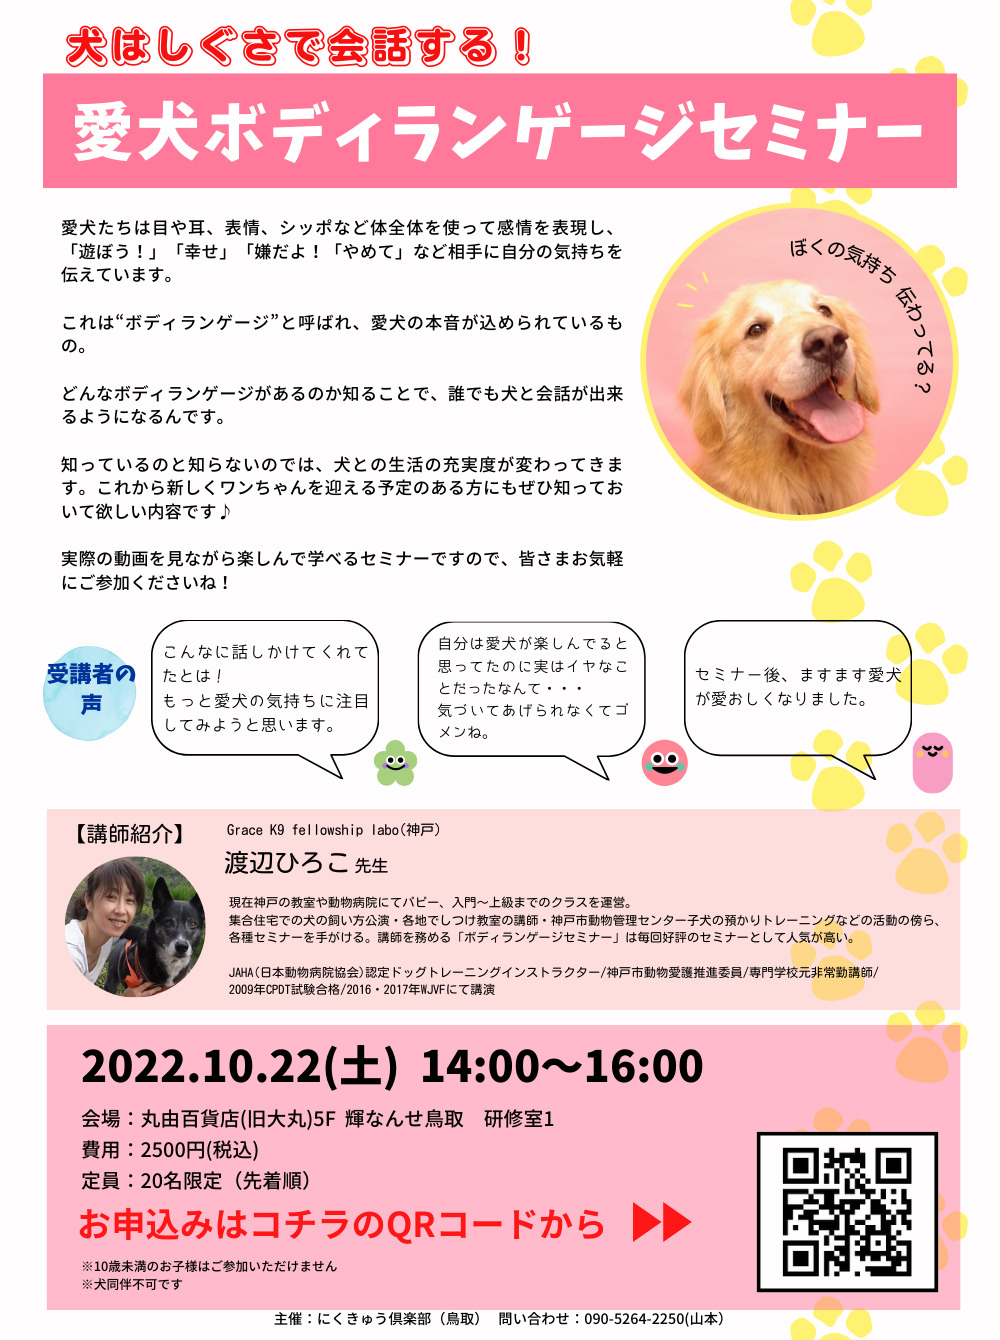 愛犬ボディランゲージセミナー【にくきゅう倶楽部】 | 丸由百貨店(旧 